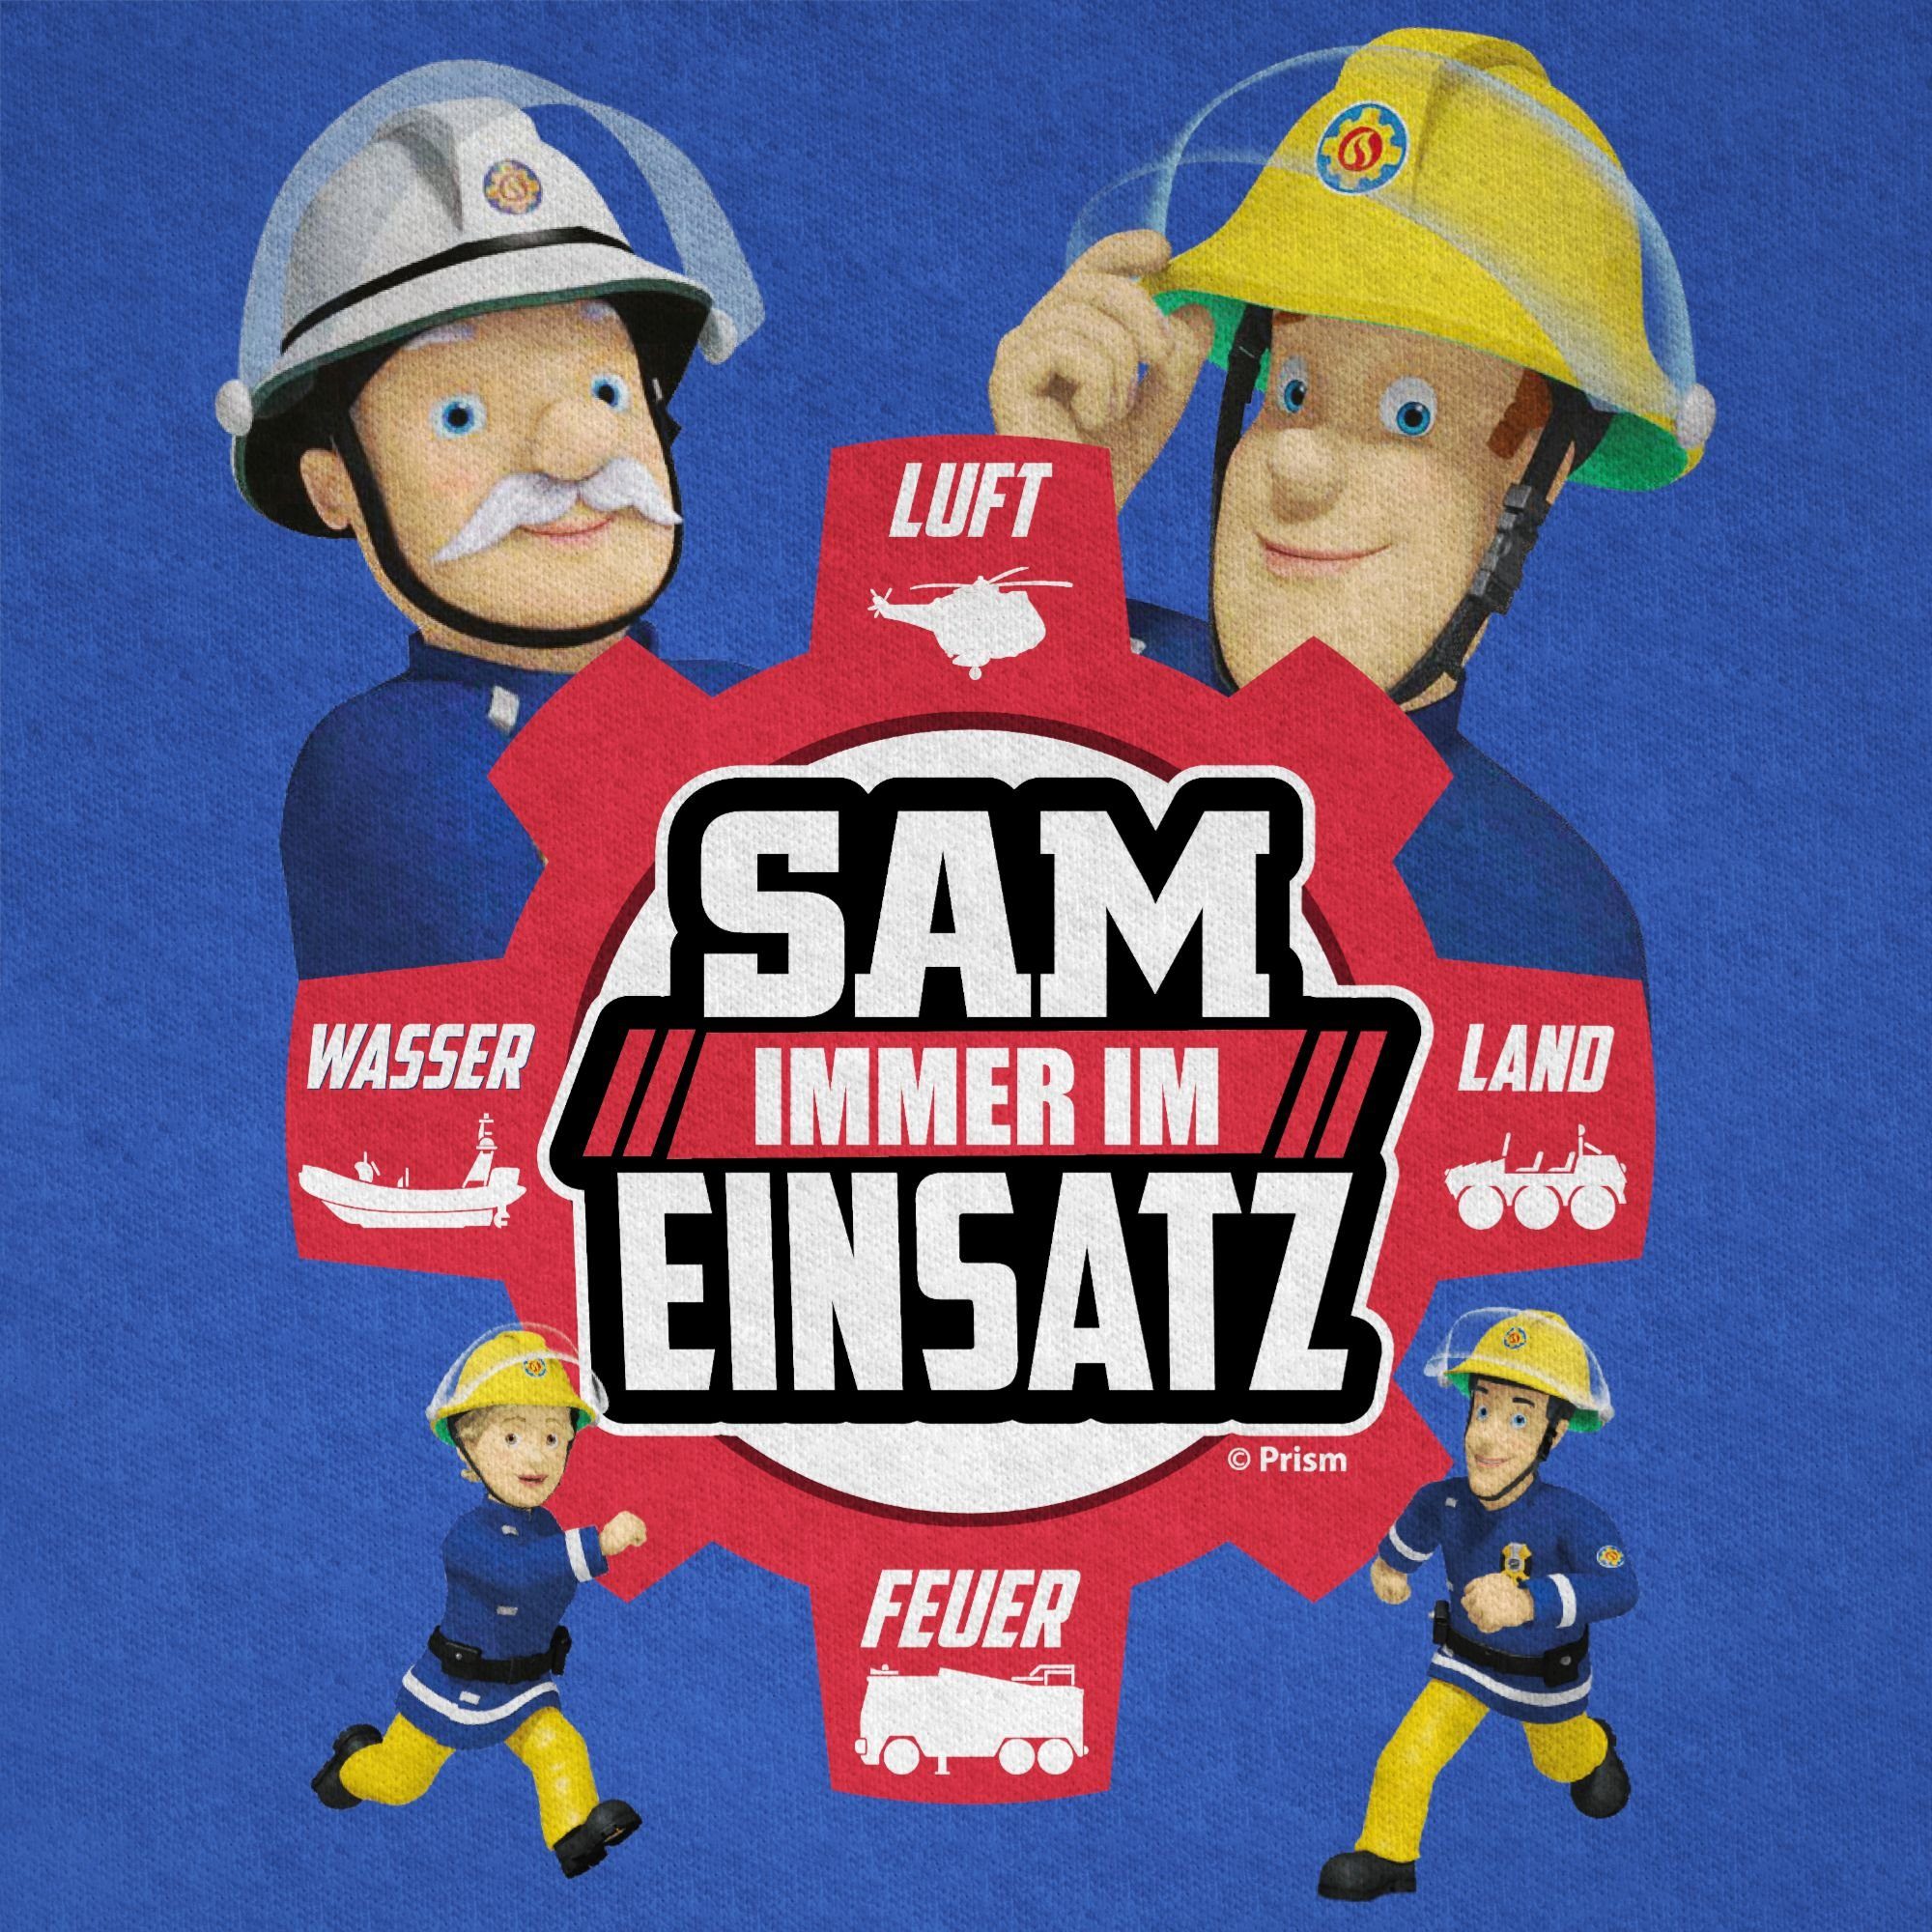 Shirtracer T-Shirt Sam Jungen Feuerwehrmann Immer Royalblau 01 im Einsatz Sam 